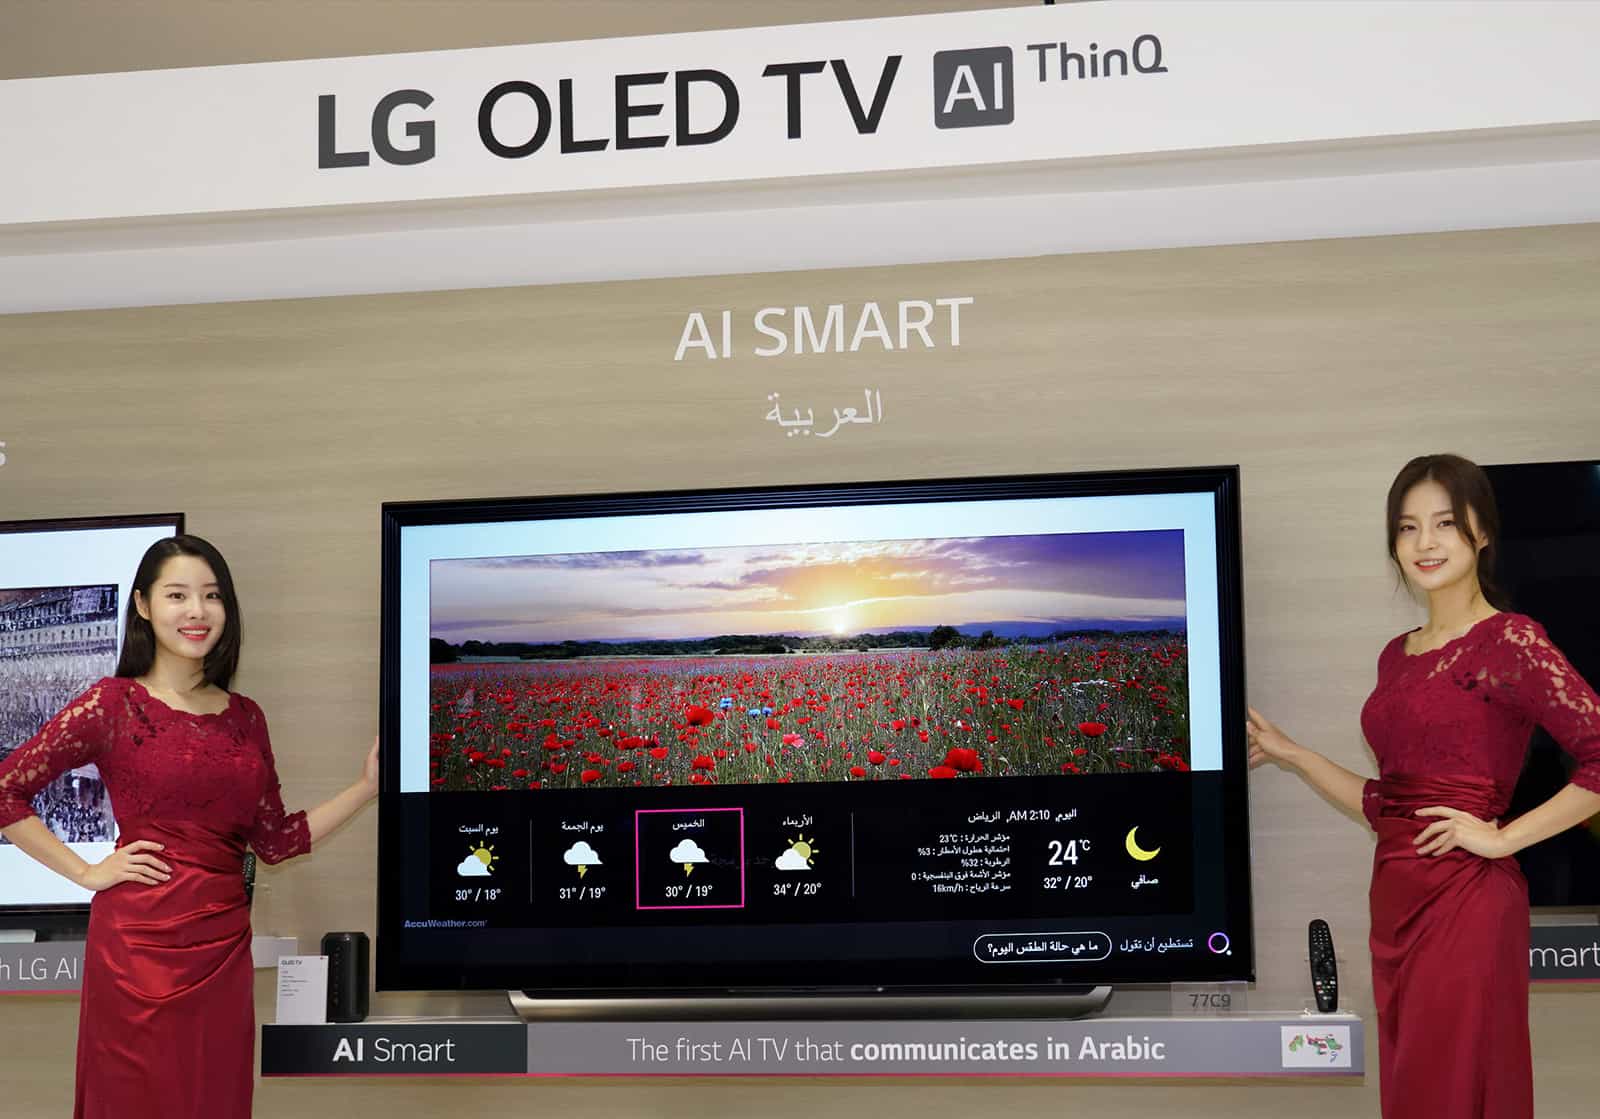 LG-OLED-TV-AI-THINQ